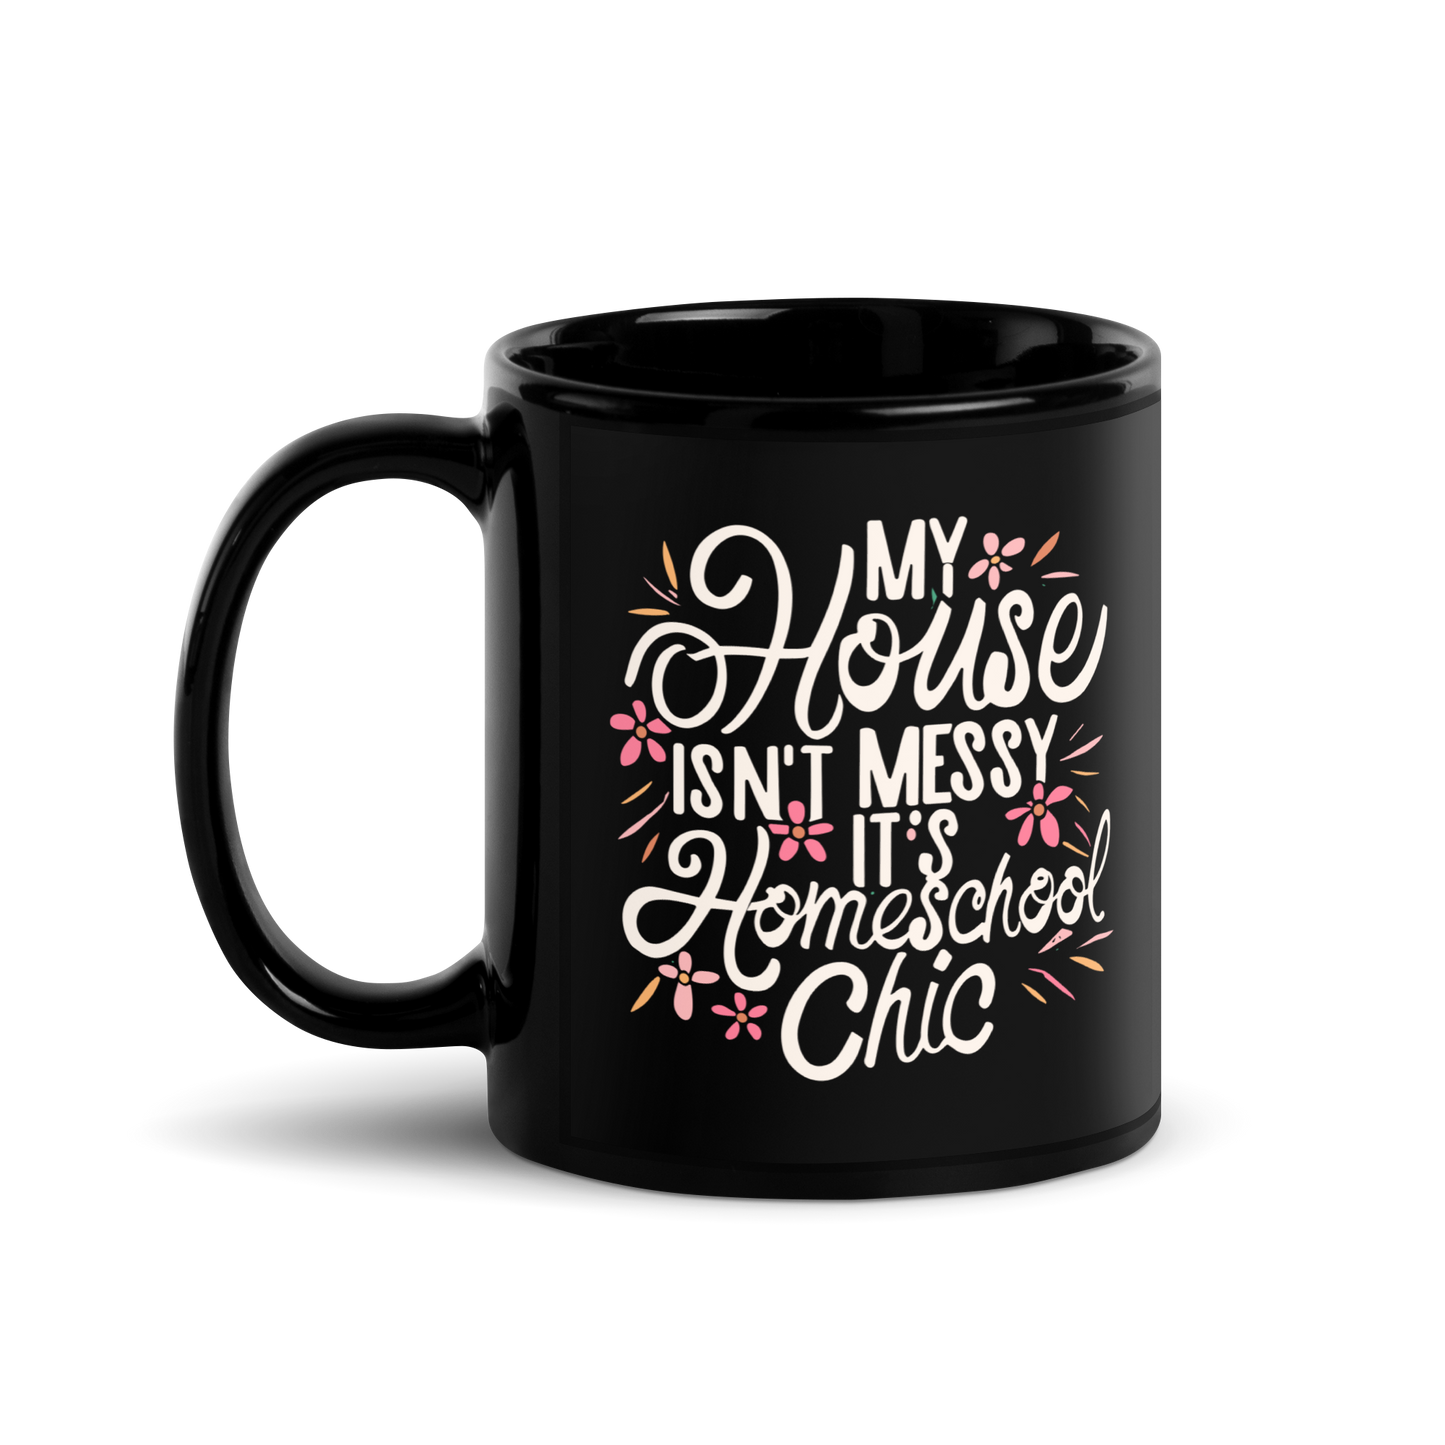 Homeschool Mom Coffee Mug - "My House Isn't Messy It's Homeschool Chic"